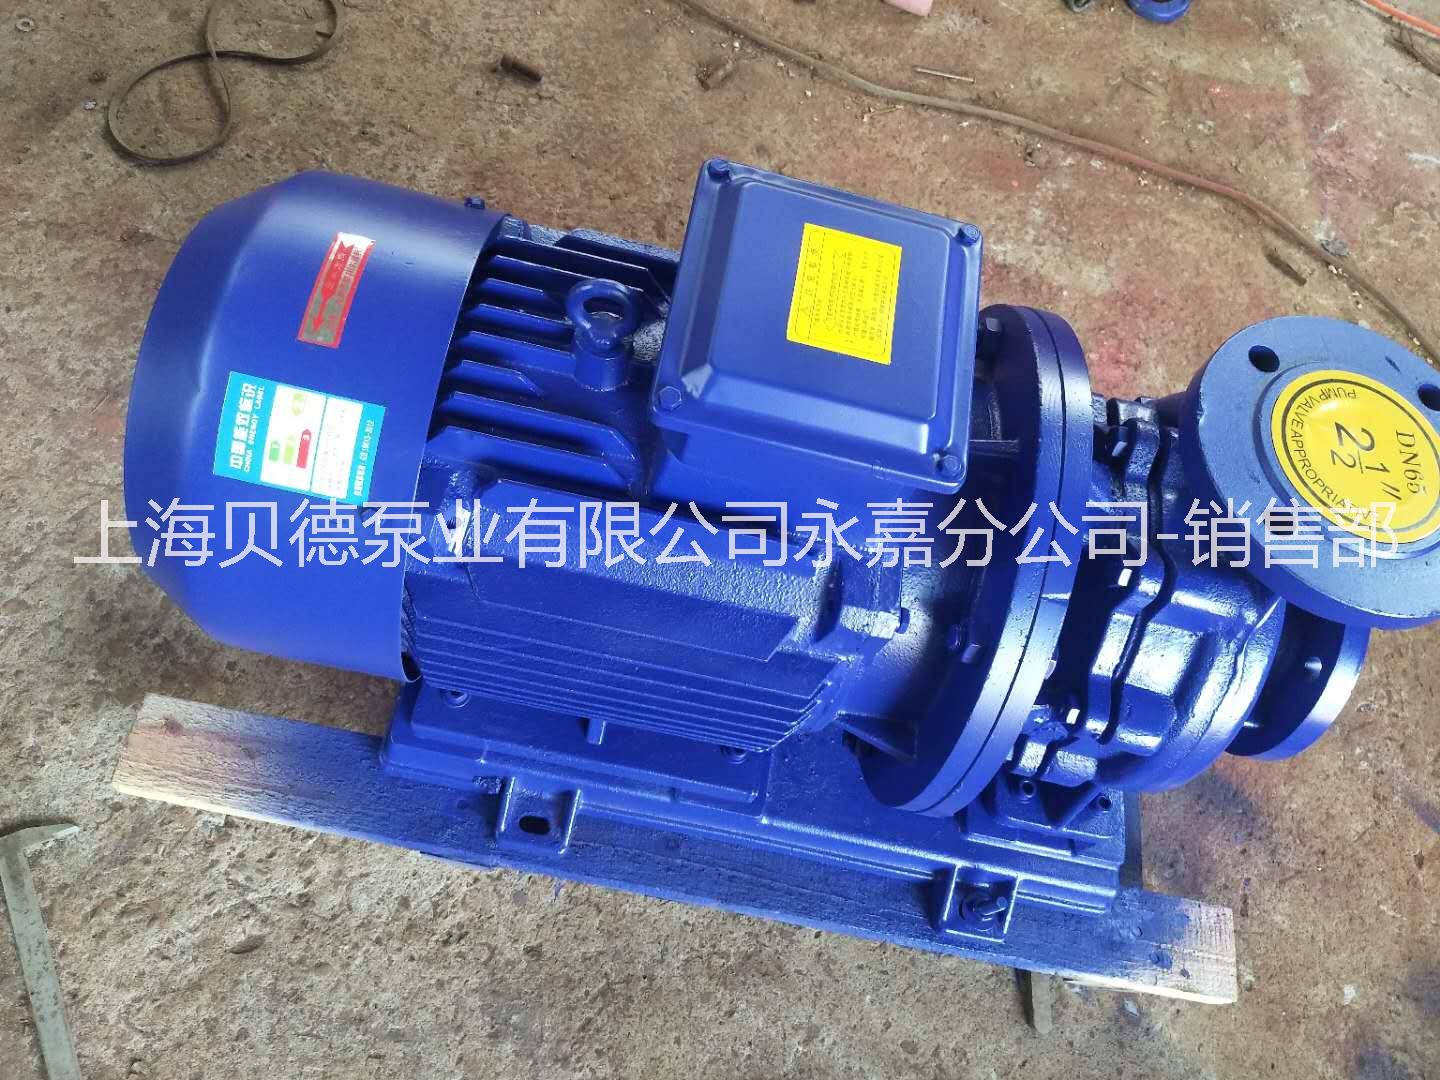 上海贝德泵业有限公司德州办事处ISG125-160  管道循环泵 自动单级单吸管道泵 IRG热水管道循环泵